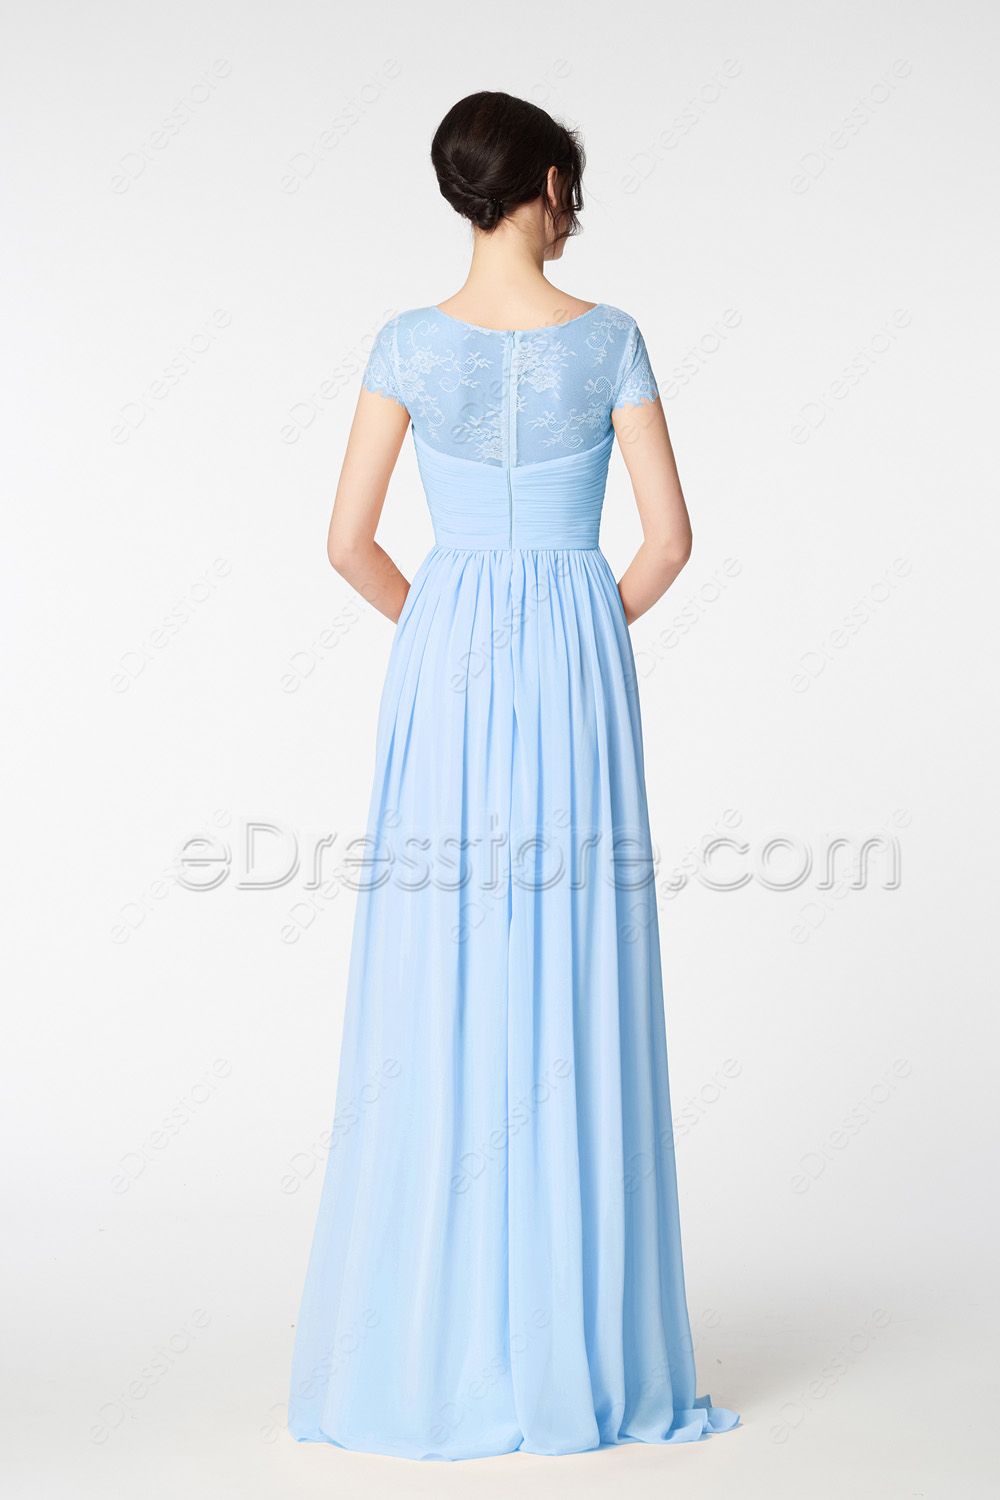 Modest Light Blue Long Prom Dress Cap Sleeves | eDresstore